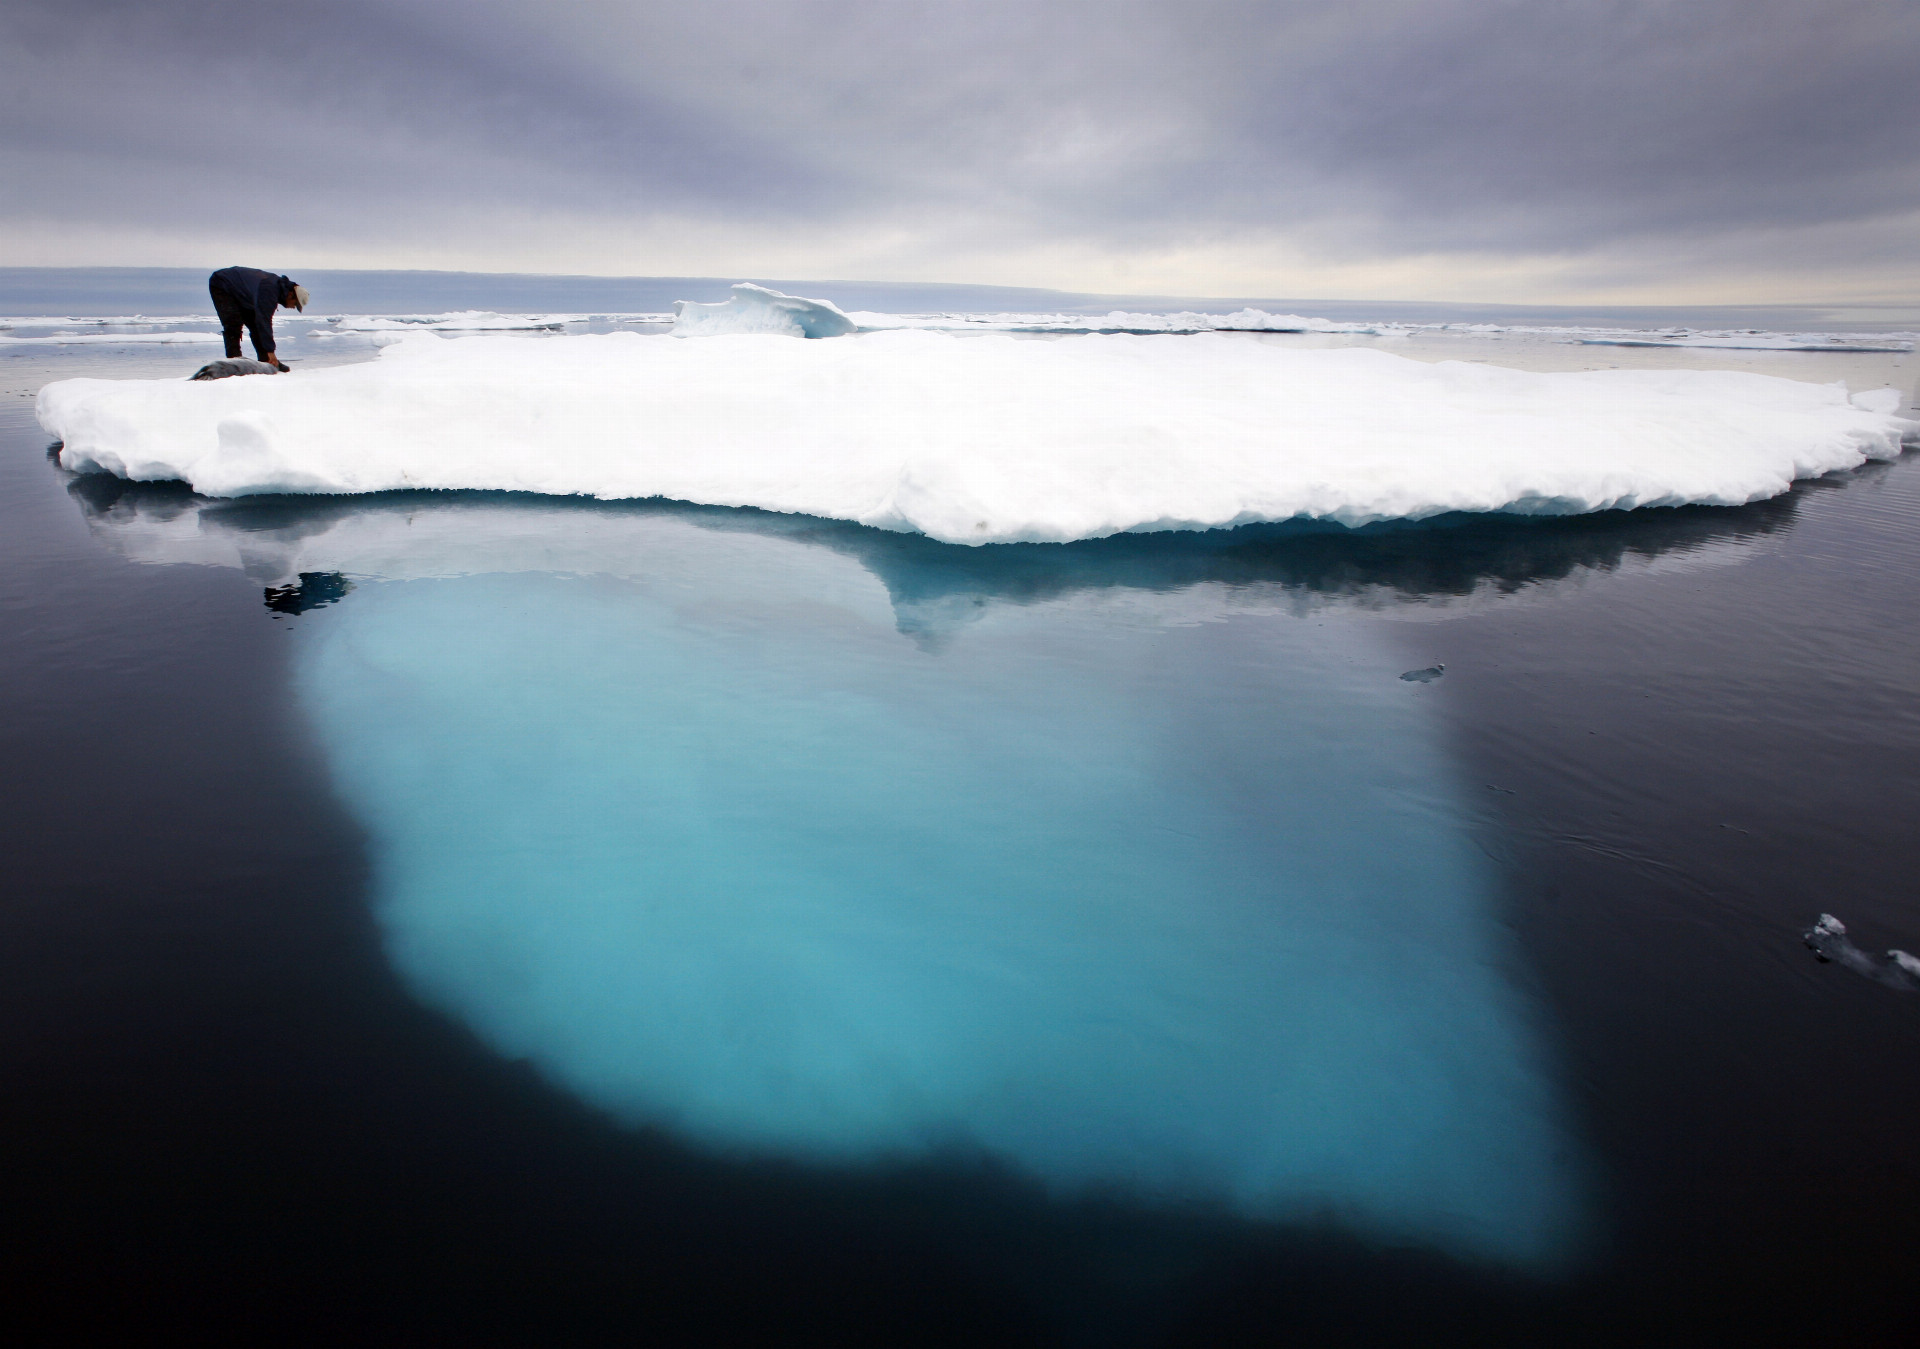 Ak by sa všetok grónsky ľad roztopil, globálna hladina mora by stúpla o ďalších šesť metrov (ilu)